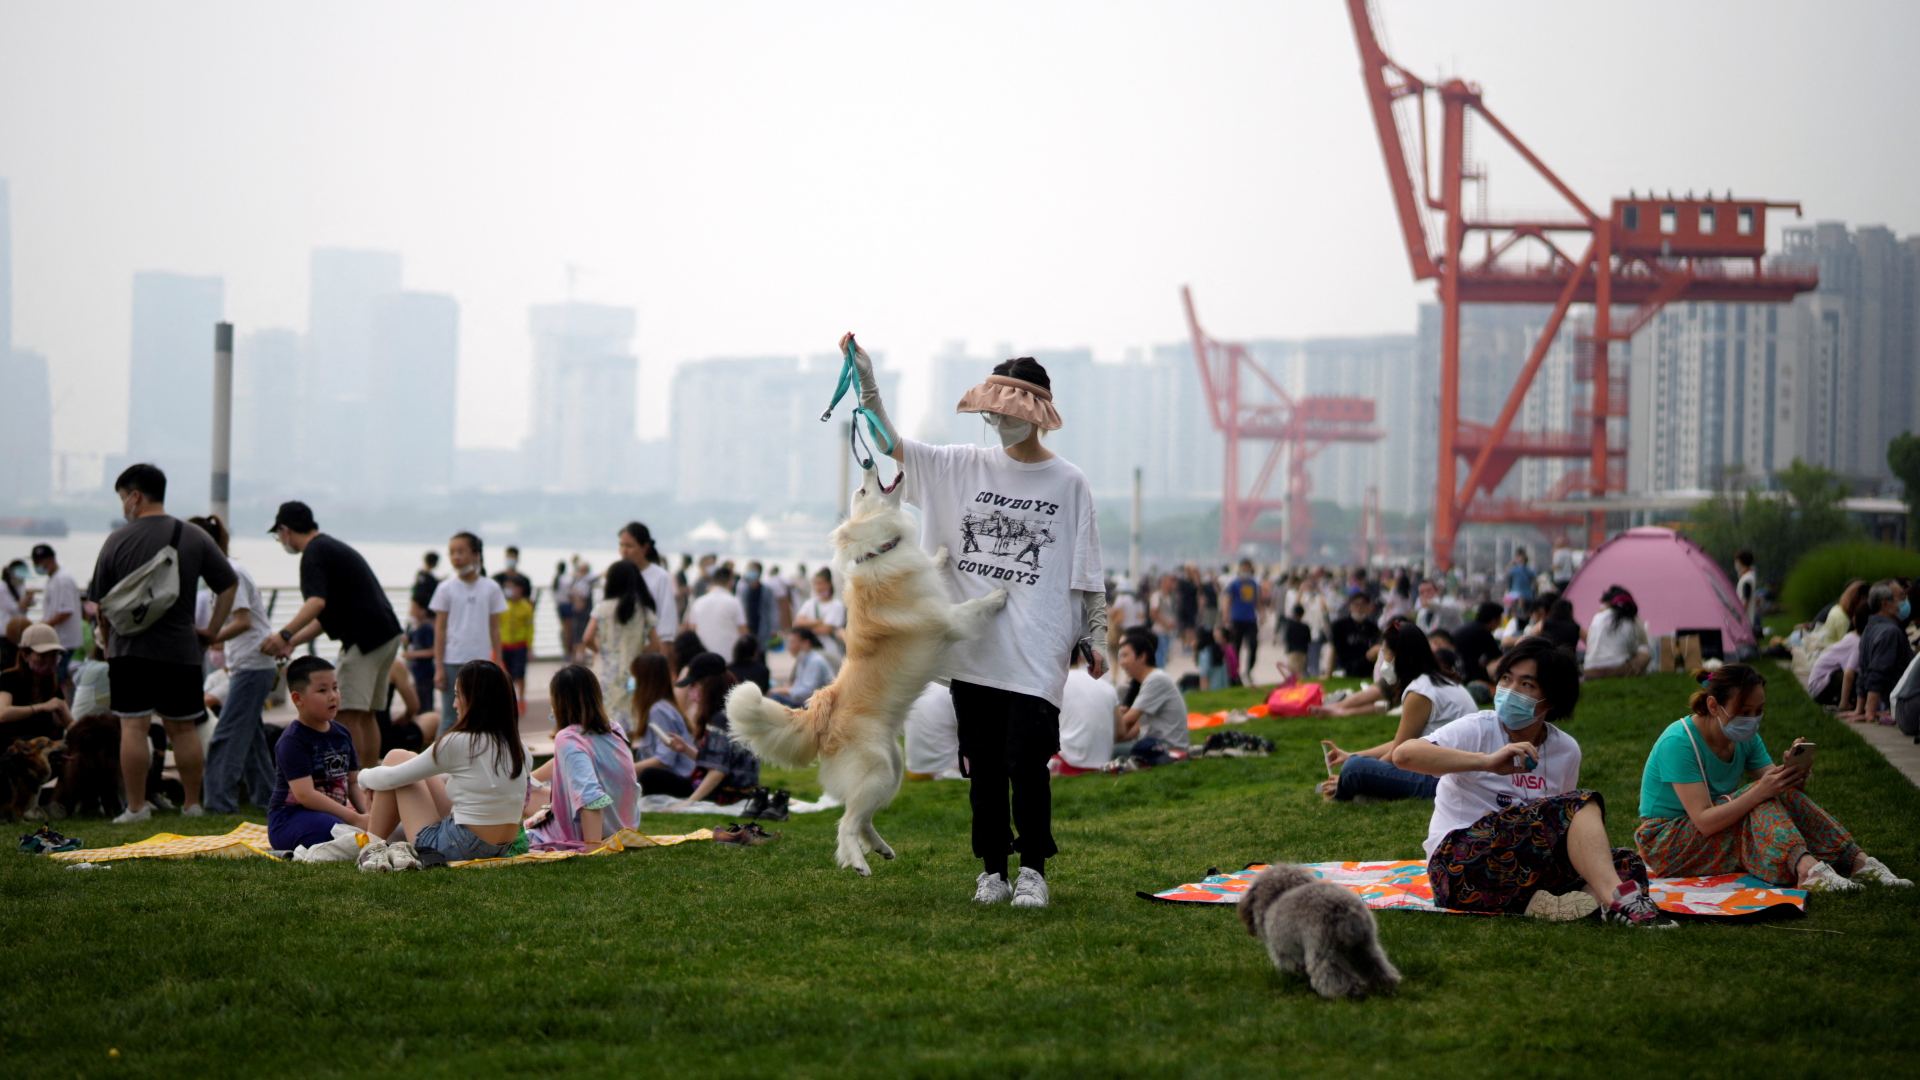 In Shanghai liegen und sitzen Menschen in Gruppen draußen, nachdem der strenge Corona-Lockdown beendet ist. Ein Mann spielt mit seinem Hund. | REUTERS